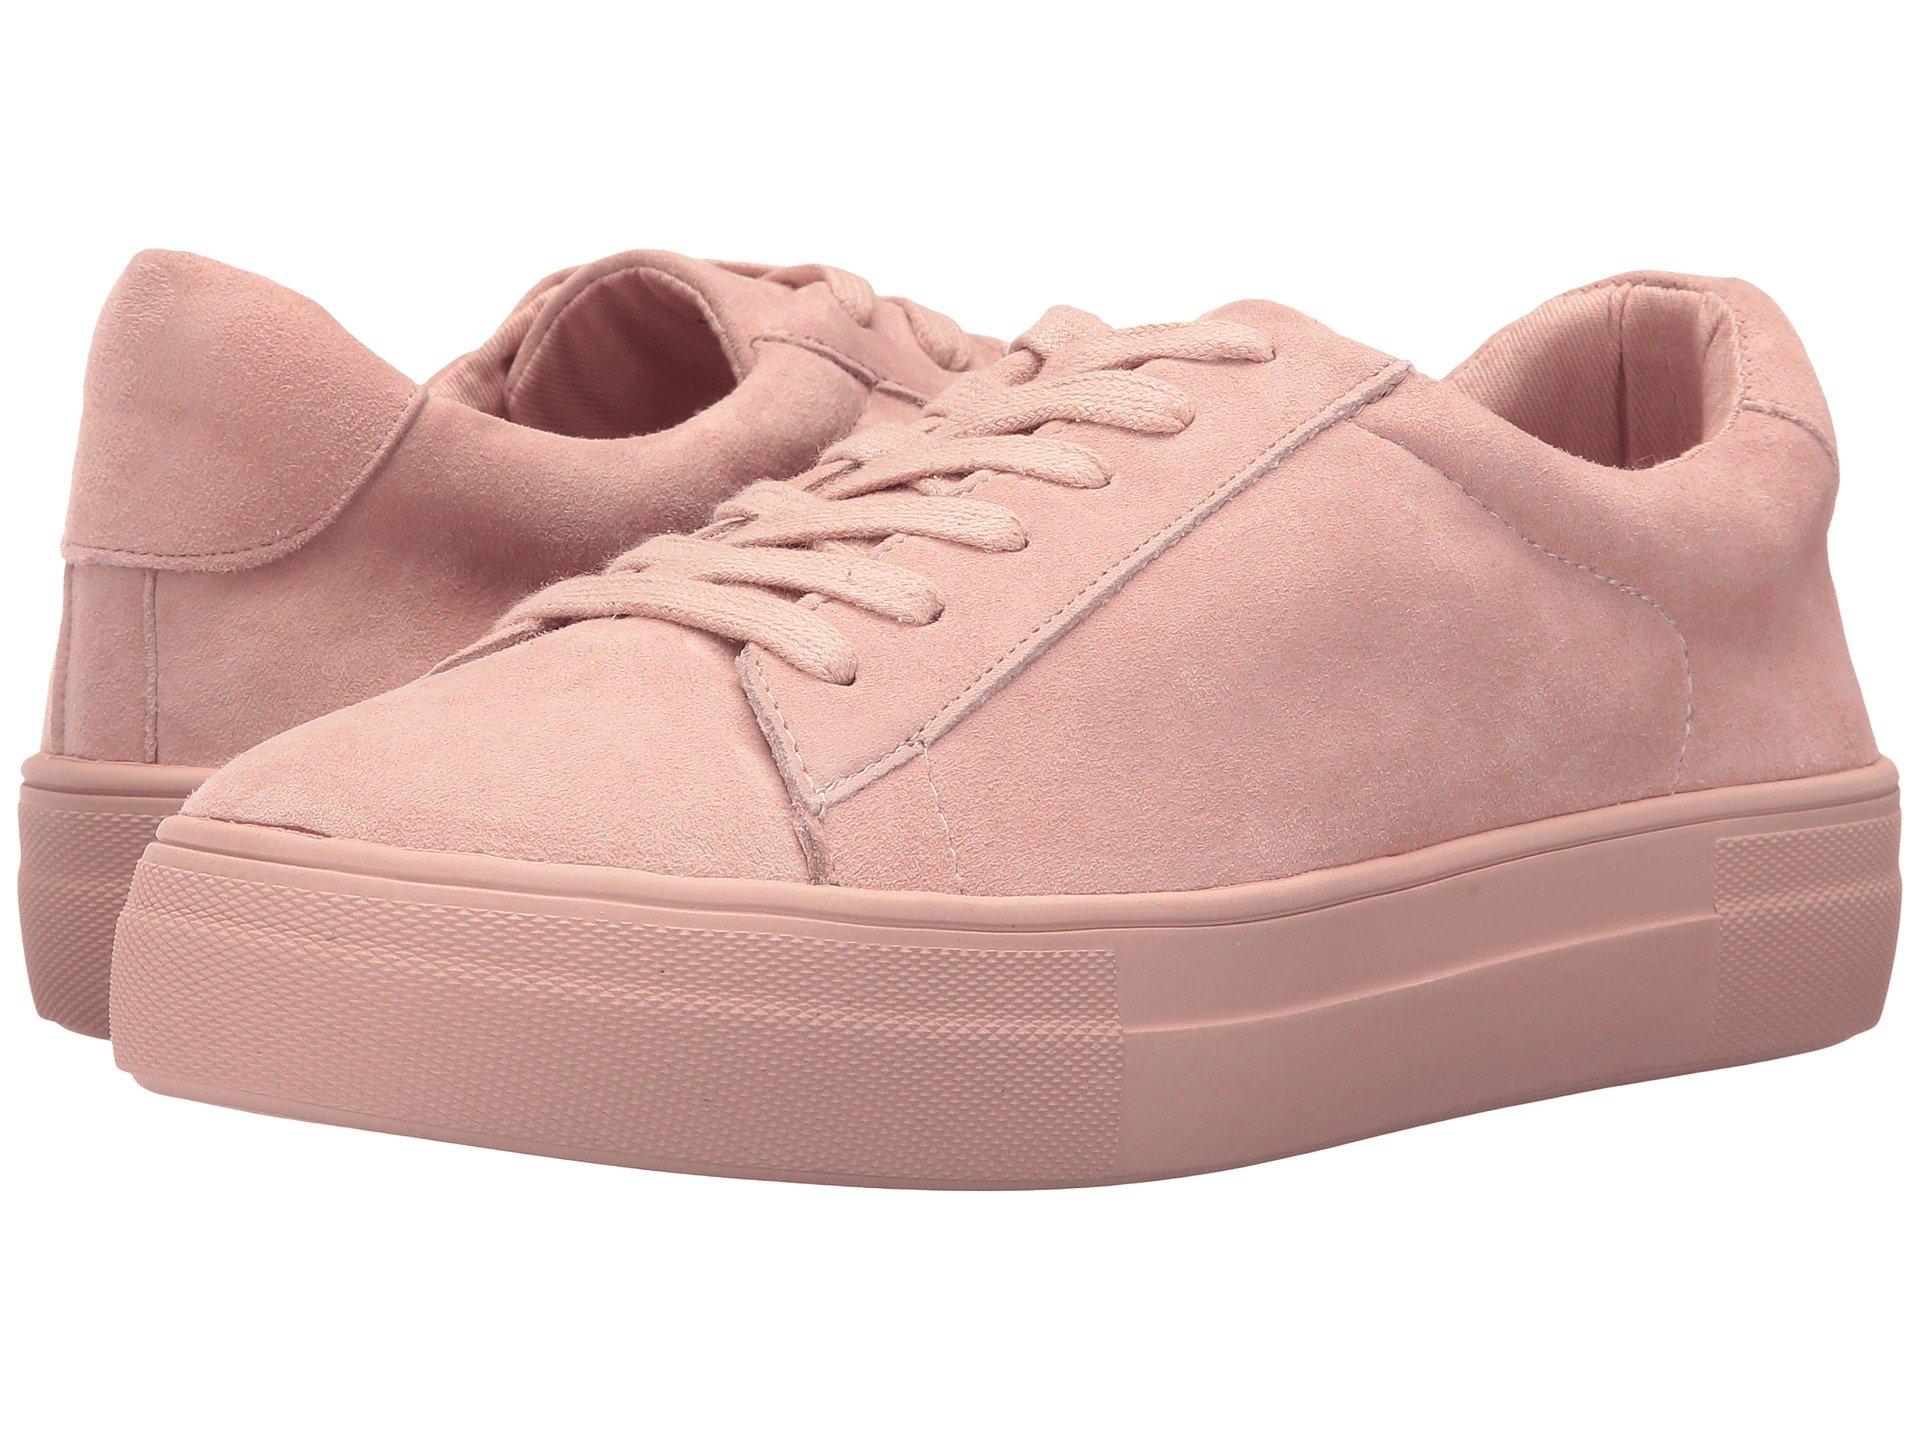 steve madden pink tennis shoes